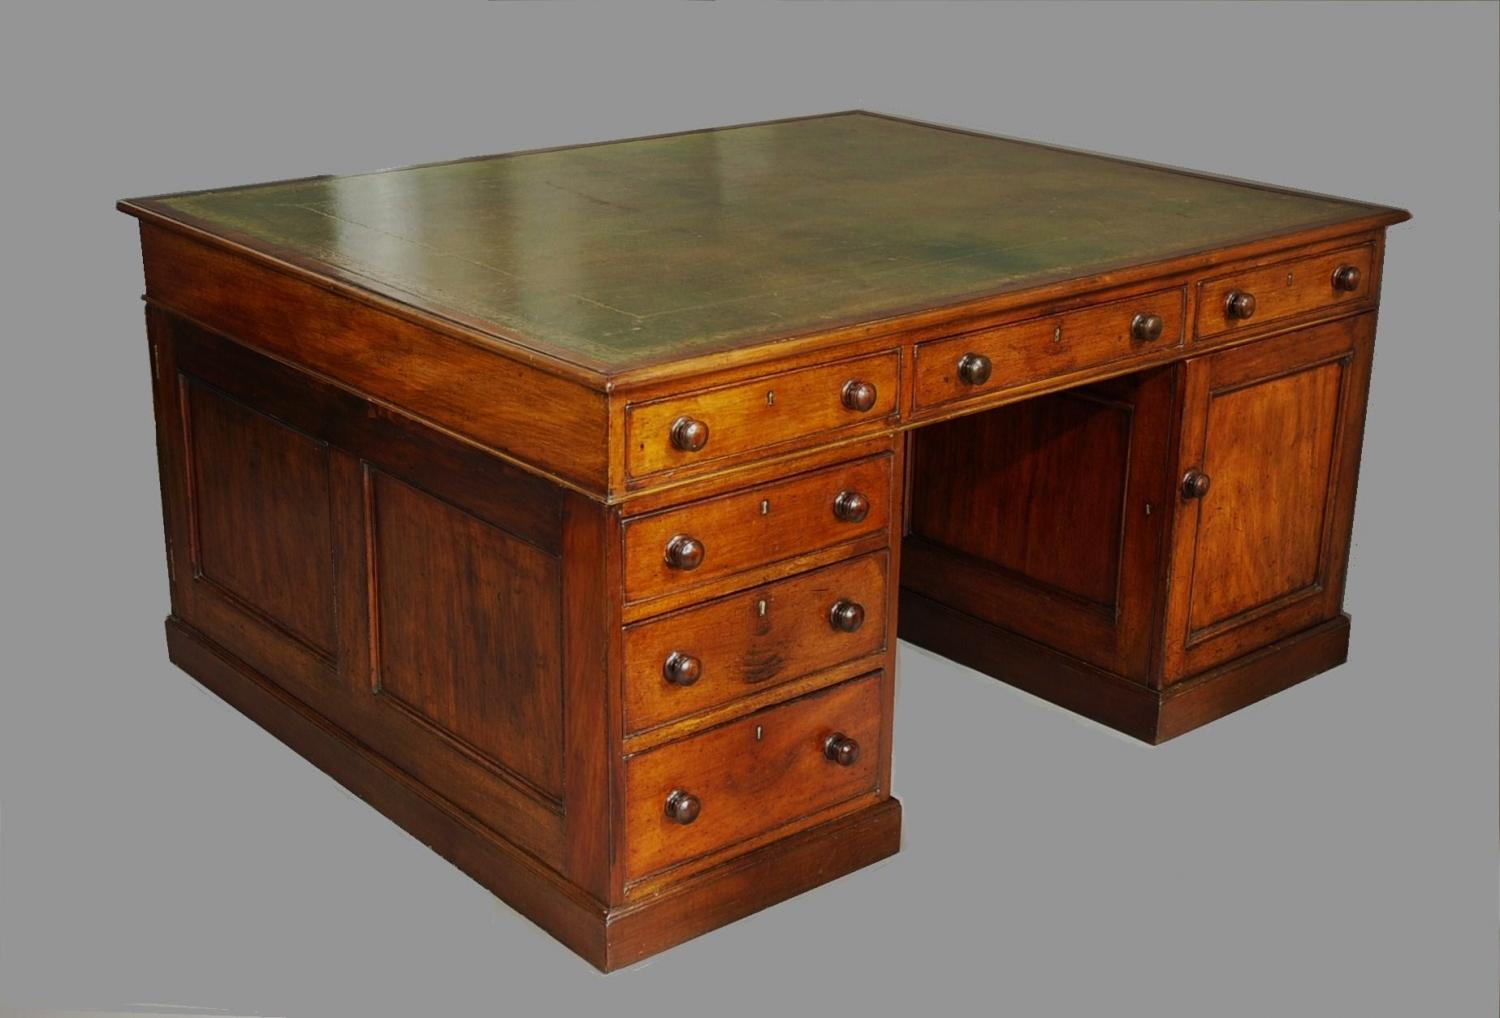 Early 19th century mahogany partners desk